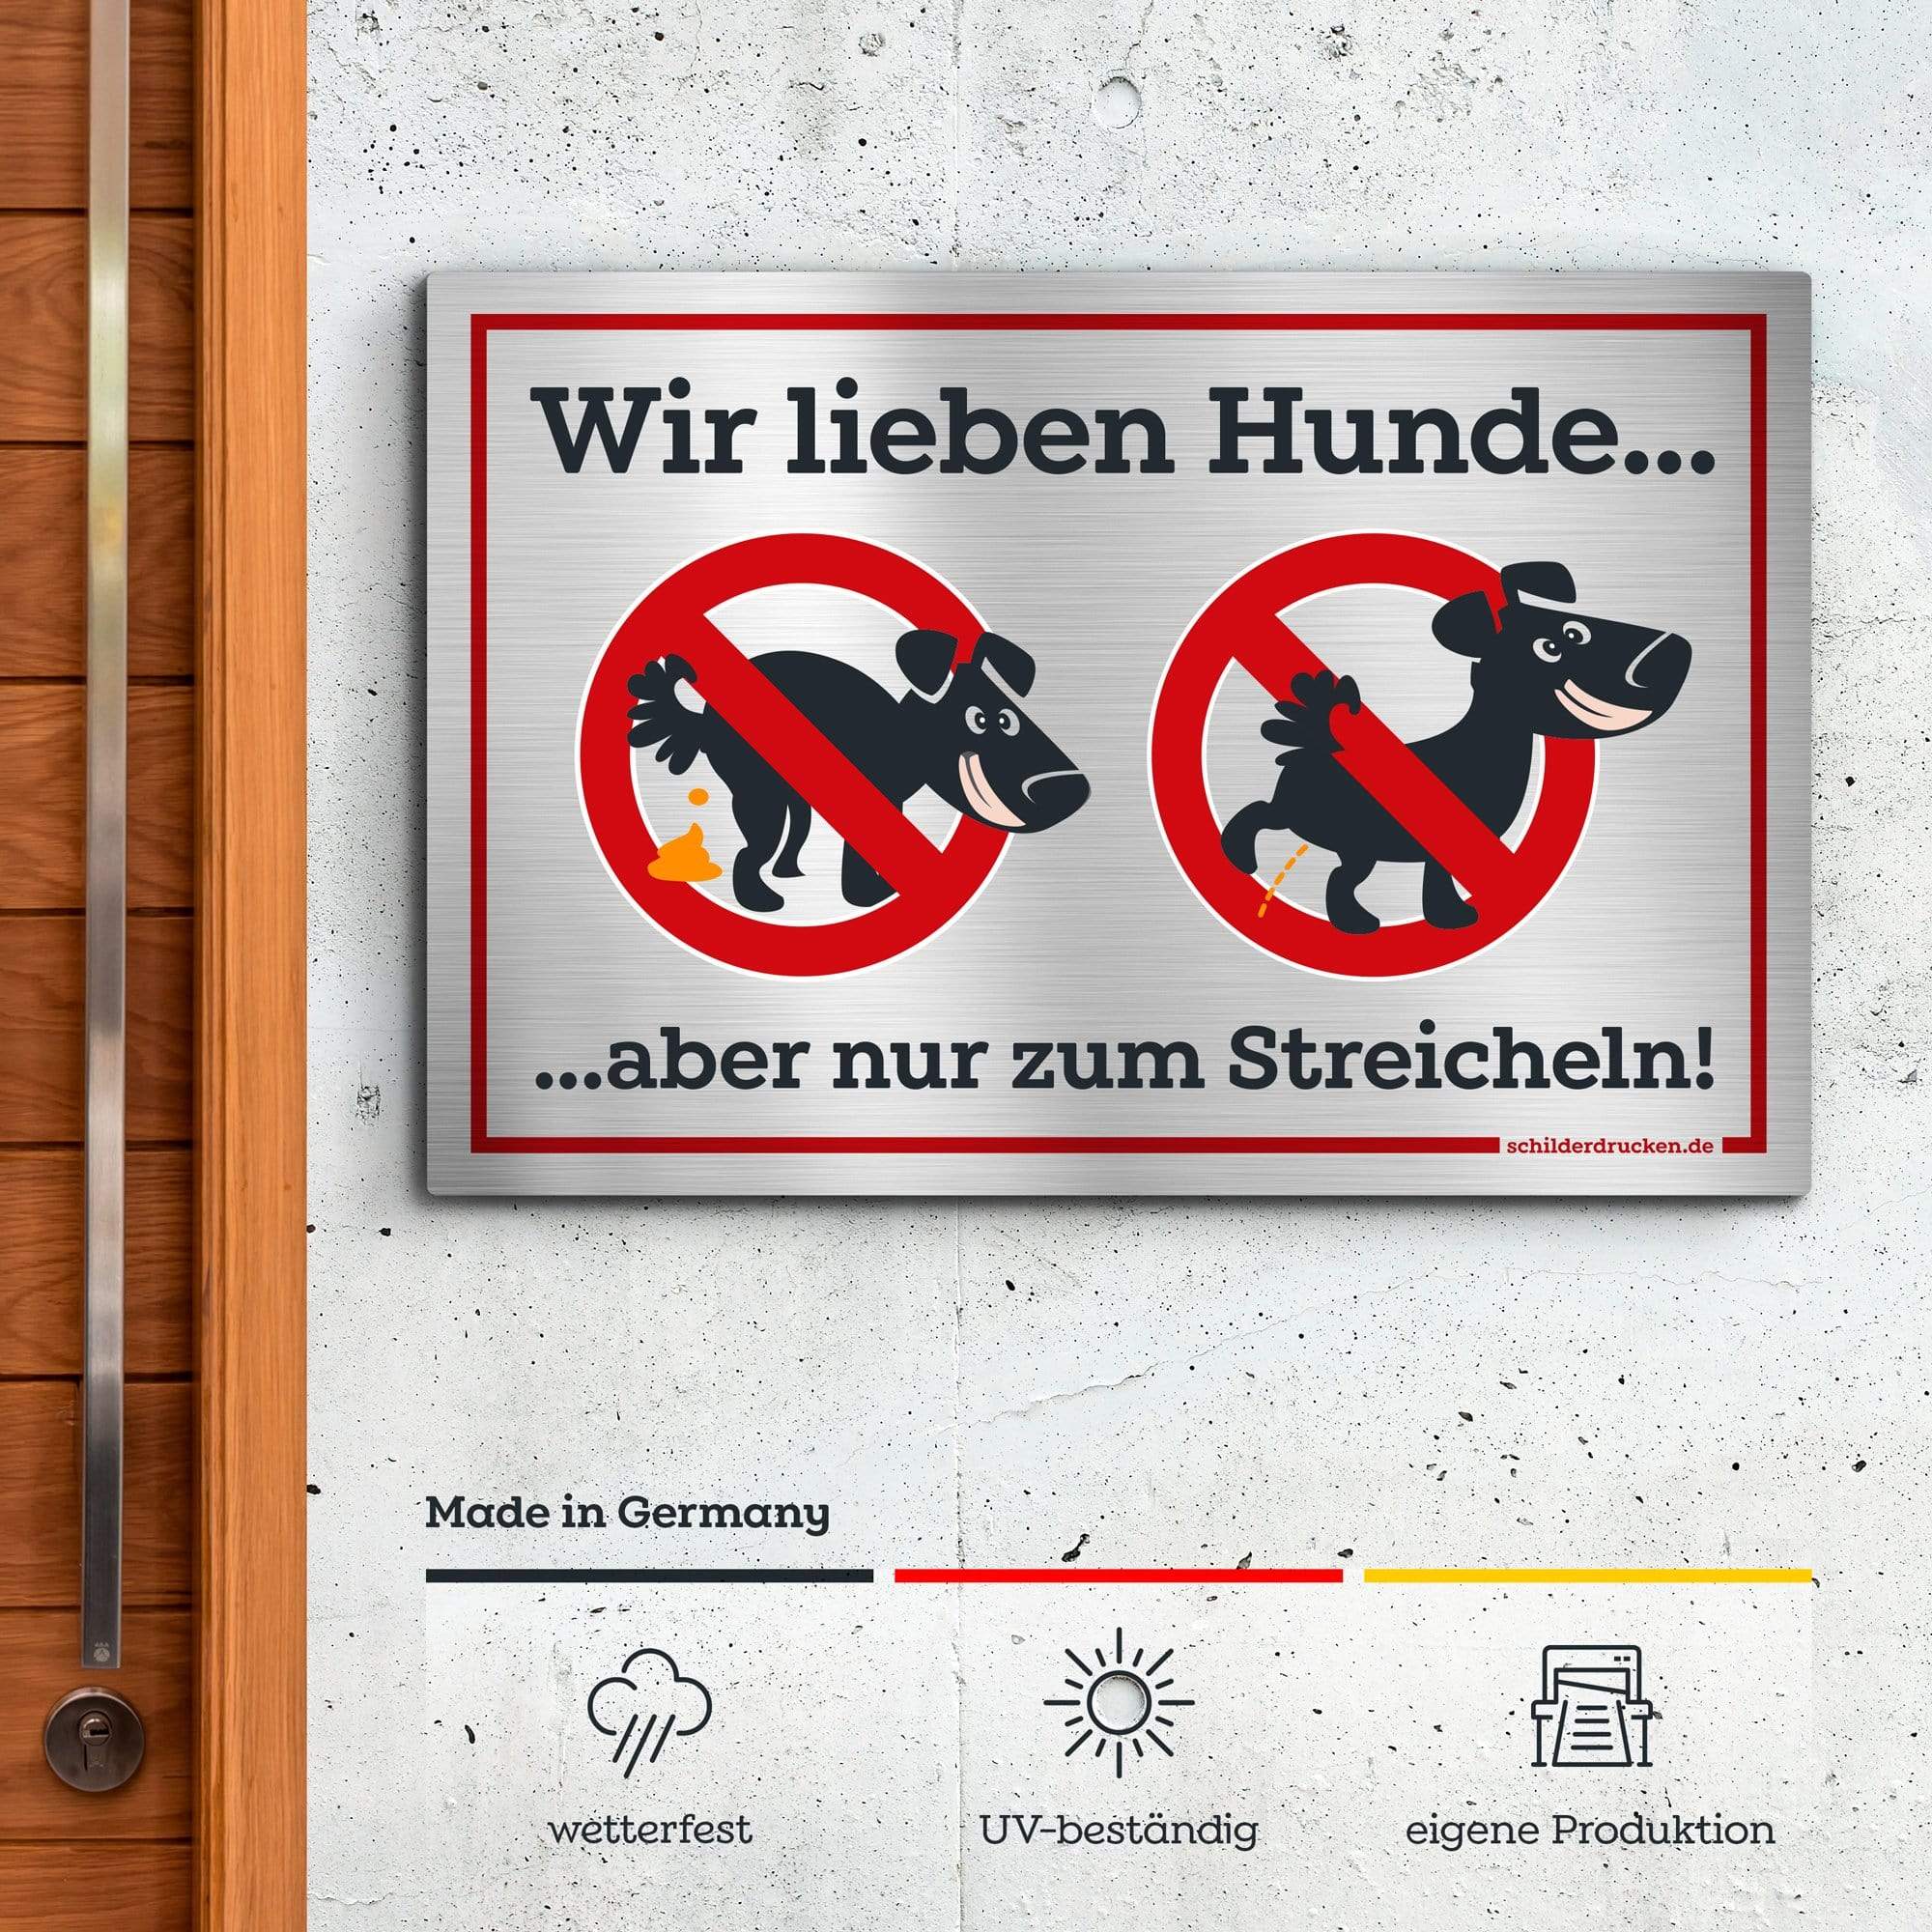 Kein Hundeklo - wir lieben Hunde! 10 x 15 cm / silber gebürstet / Alu-Dibond online drucken lassen bei schilderdrucken.de